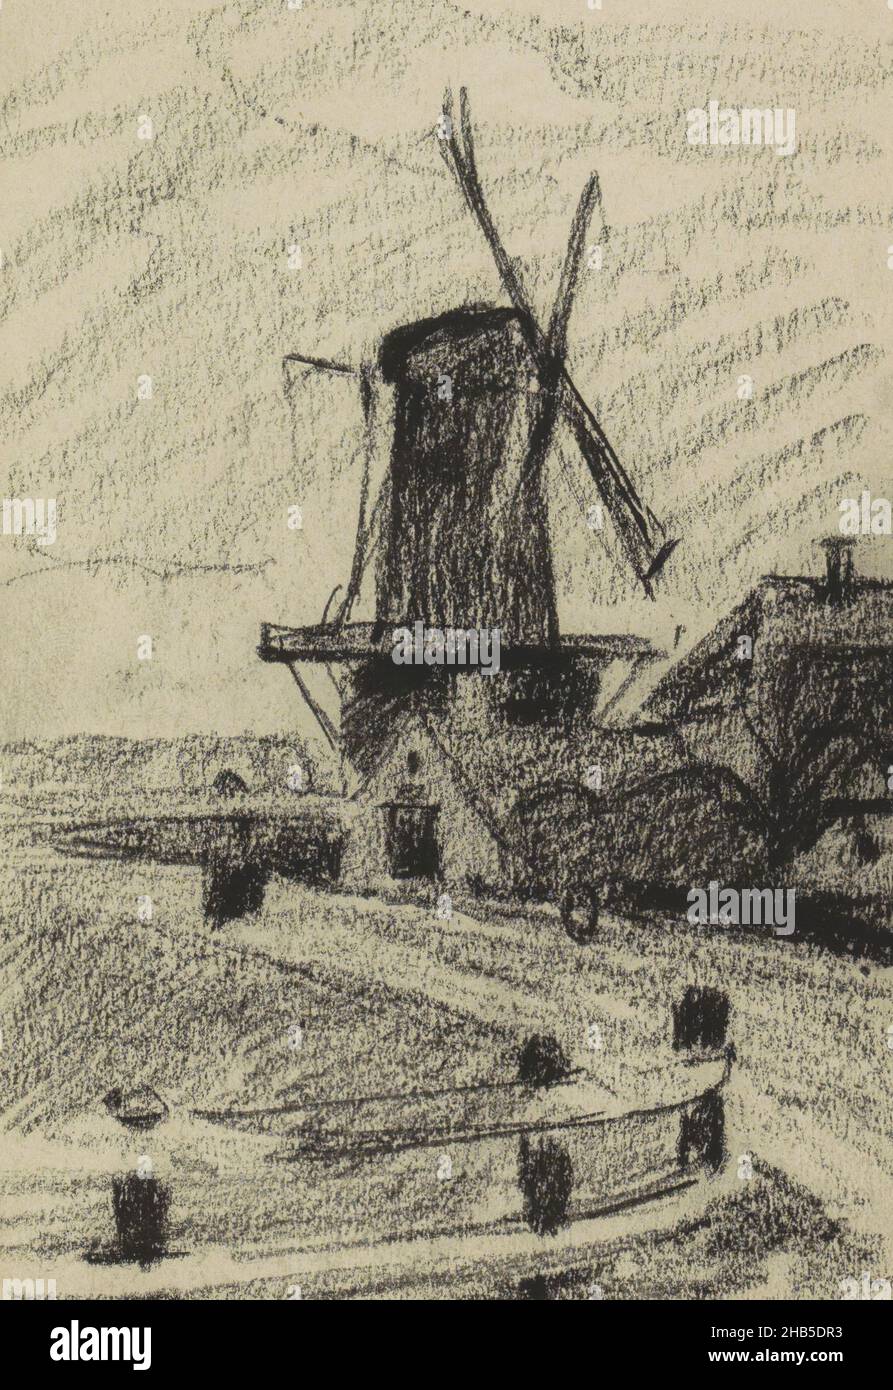 Pagina 30 da un libretto di 25 pagine, Vista del mulino a vento Rijn e Lek a Wijk bij Duurstede., disegnatore: Willem Witsen, Wijk bij Duurstede, 1906 - 1907, Willem Witsen, 1906 - 1907 Foto Stock